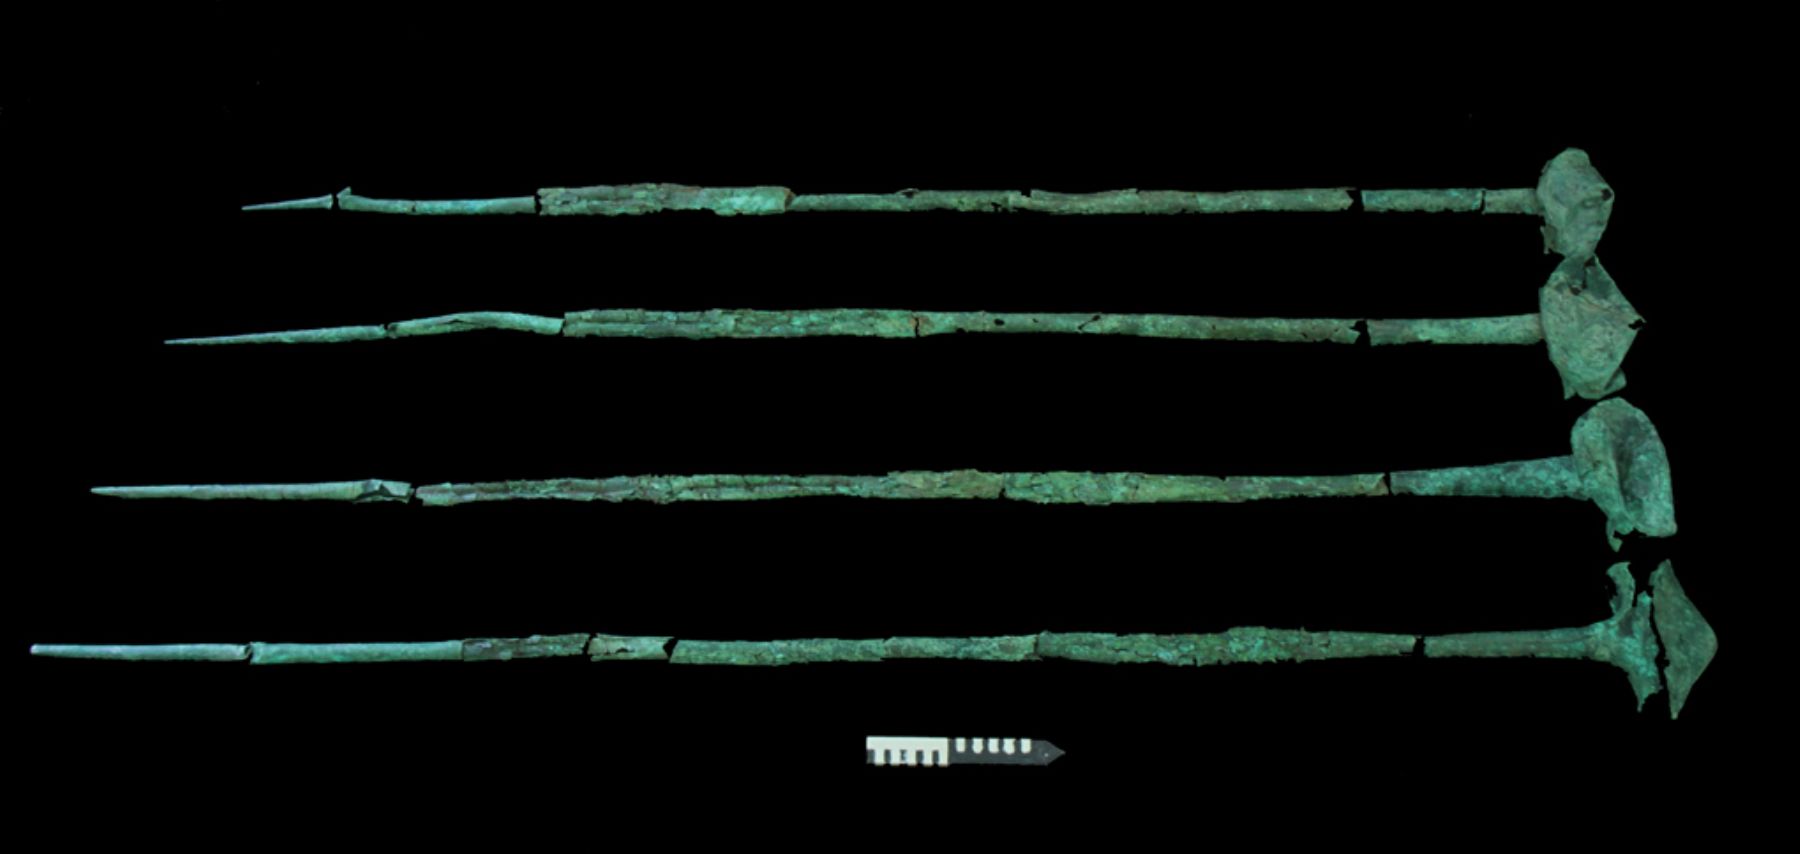 Porras de cobre usadas por guerrero del pututo serán exhibidas en el museo de sitio Huaca Rajada-Sipán (Lambayeque).